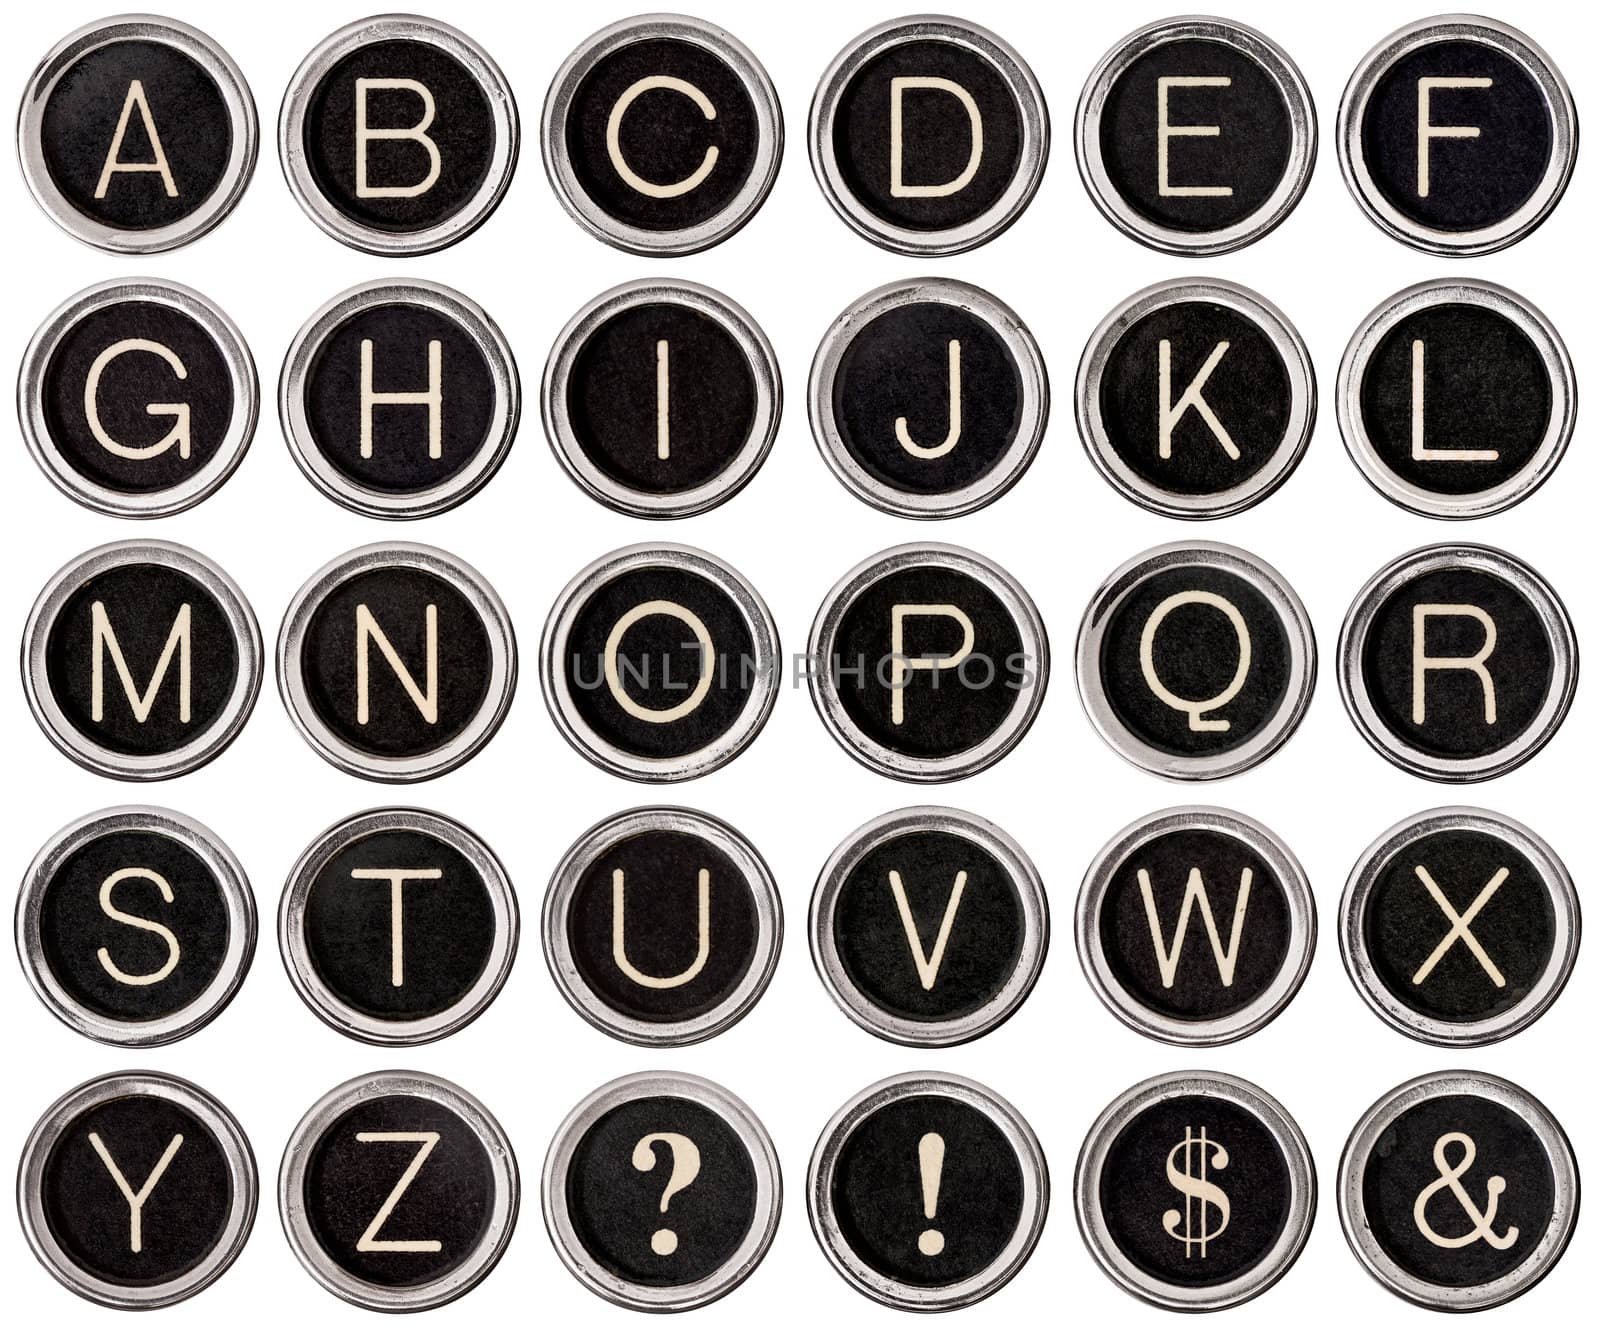 Vintage Typewriter Key Alphabet by Em3